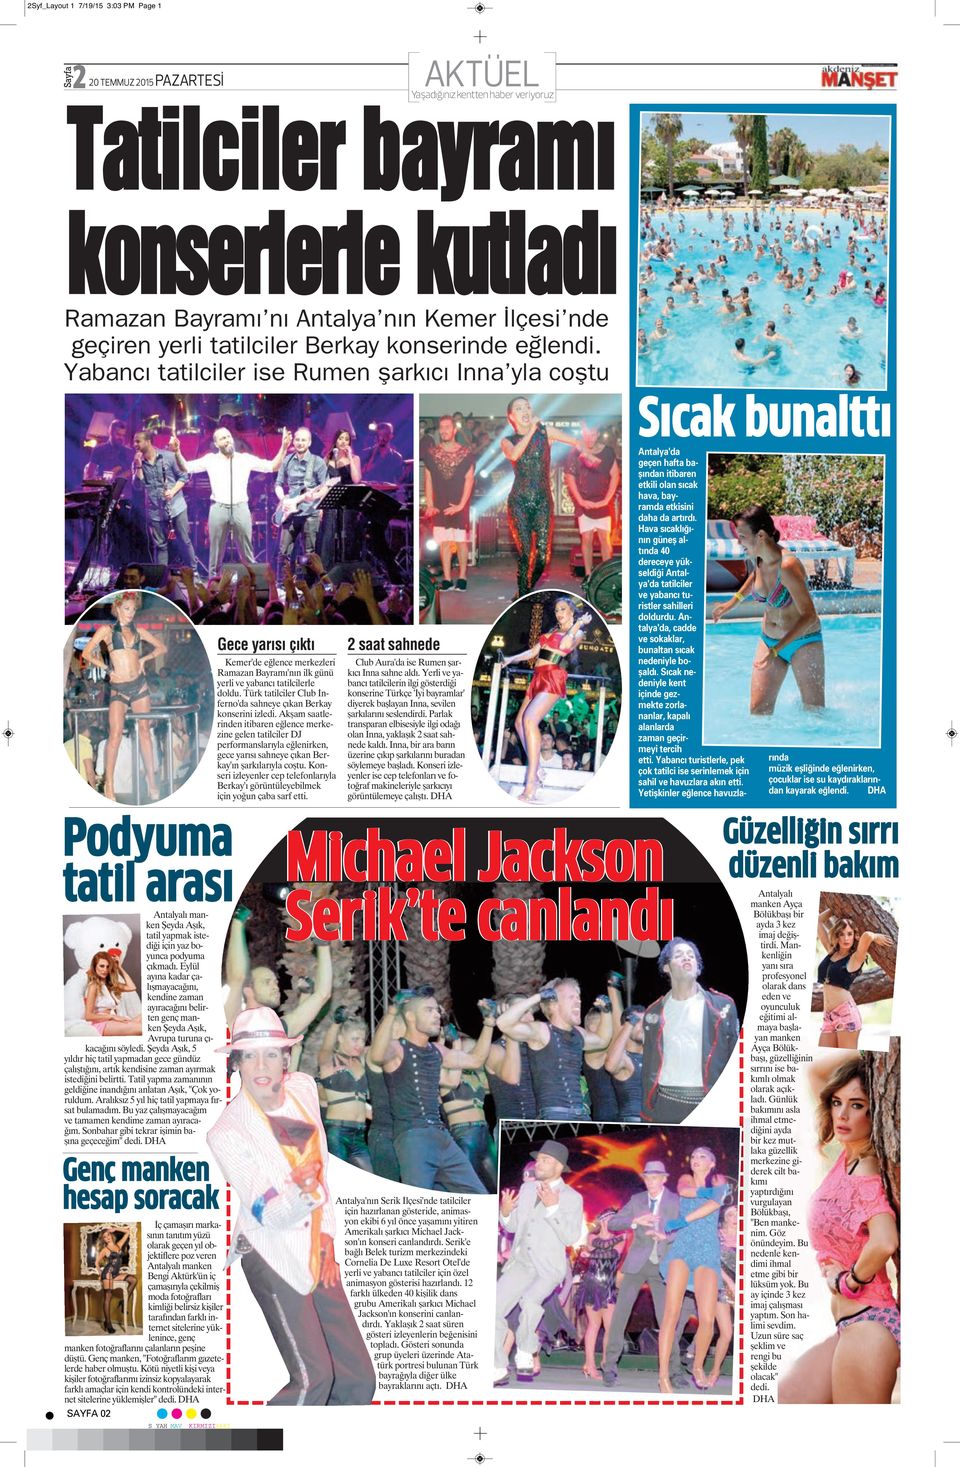 Türk tatilciler Club İnferno'da sahneye çıkan Berkay konserini izledi.